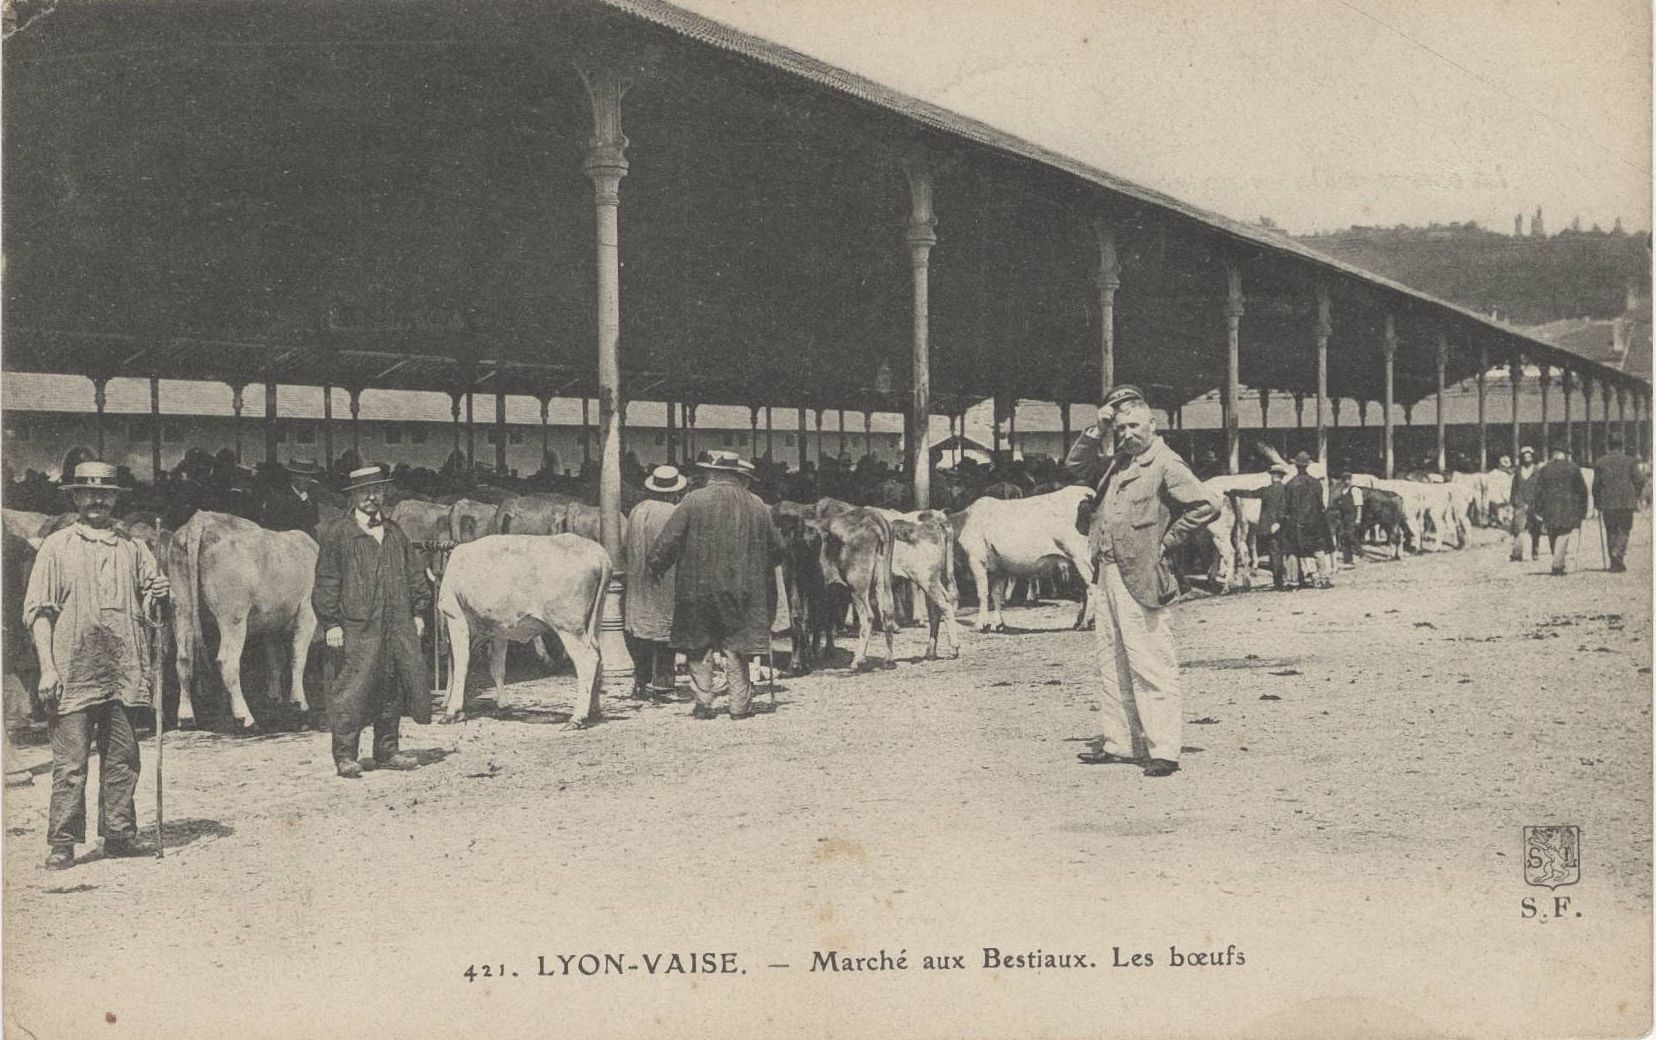 Lyon-Vaise - Marché aux bestiaux : carte postale NB (vers 1906, cote : 4FI/4104)